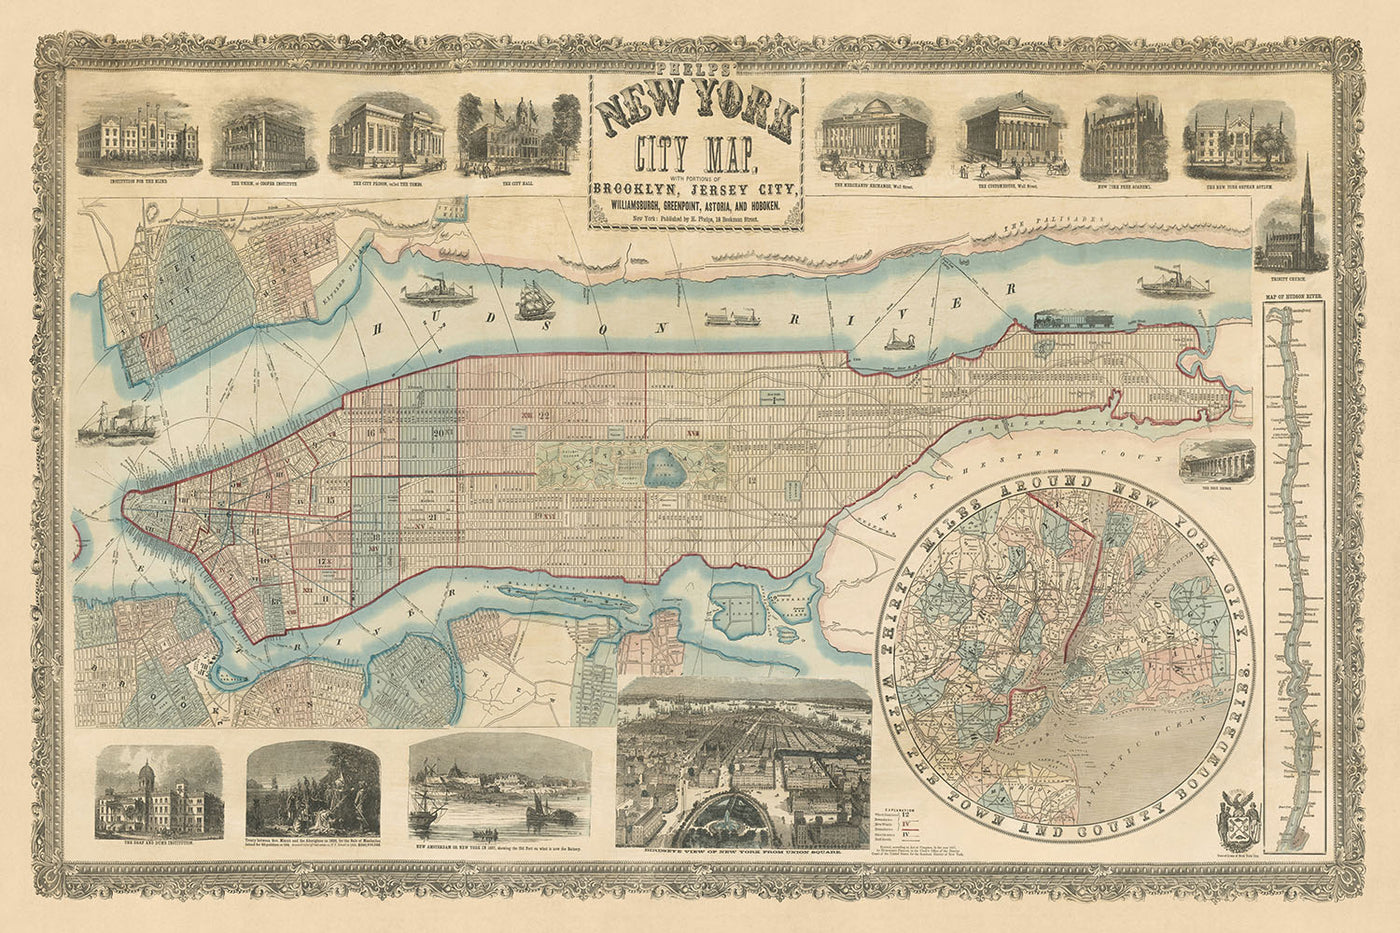 Ancienne carte de la ville de New York par Phelps, 1857 : Central Park, The Battery, Ellis Island, Hudson River, création de Central Park